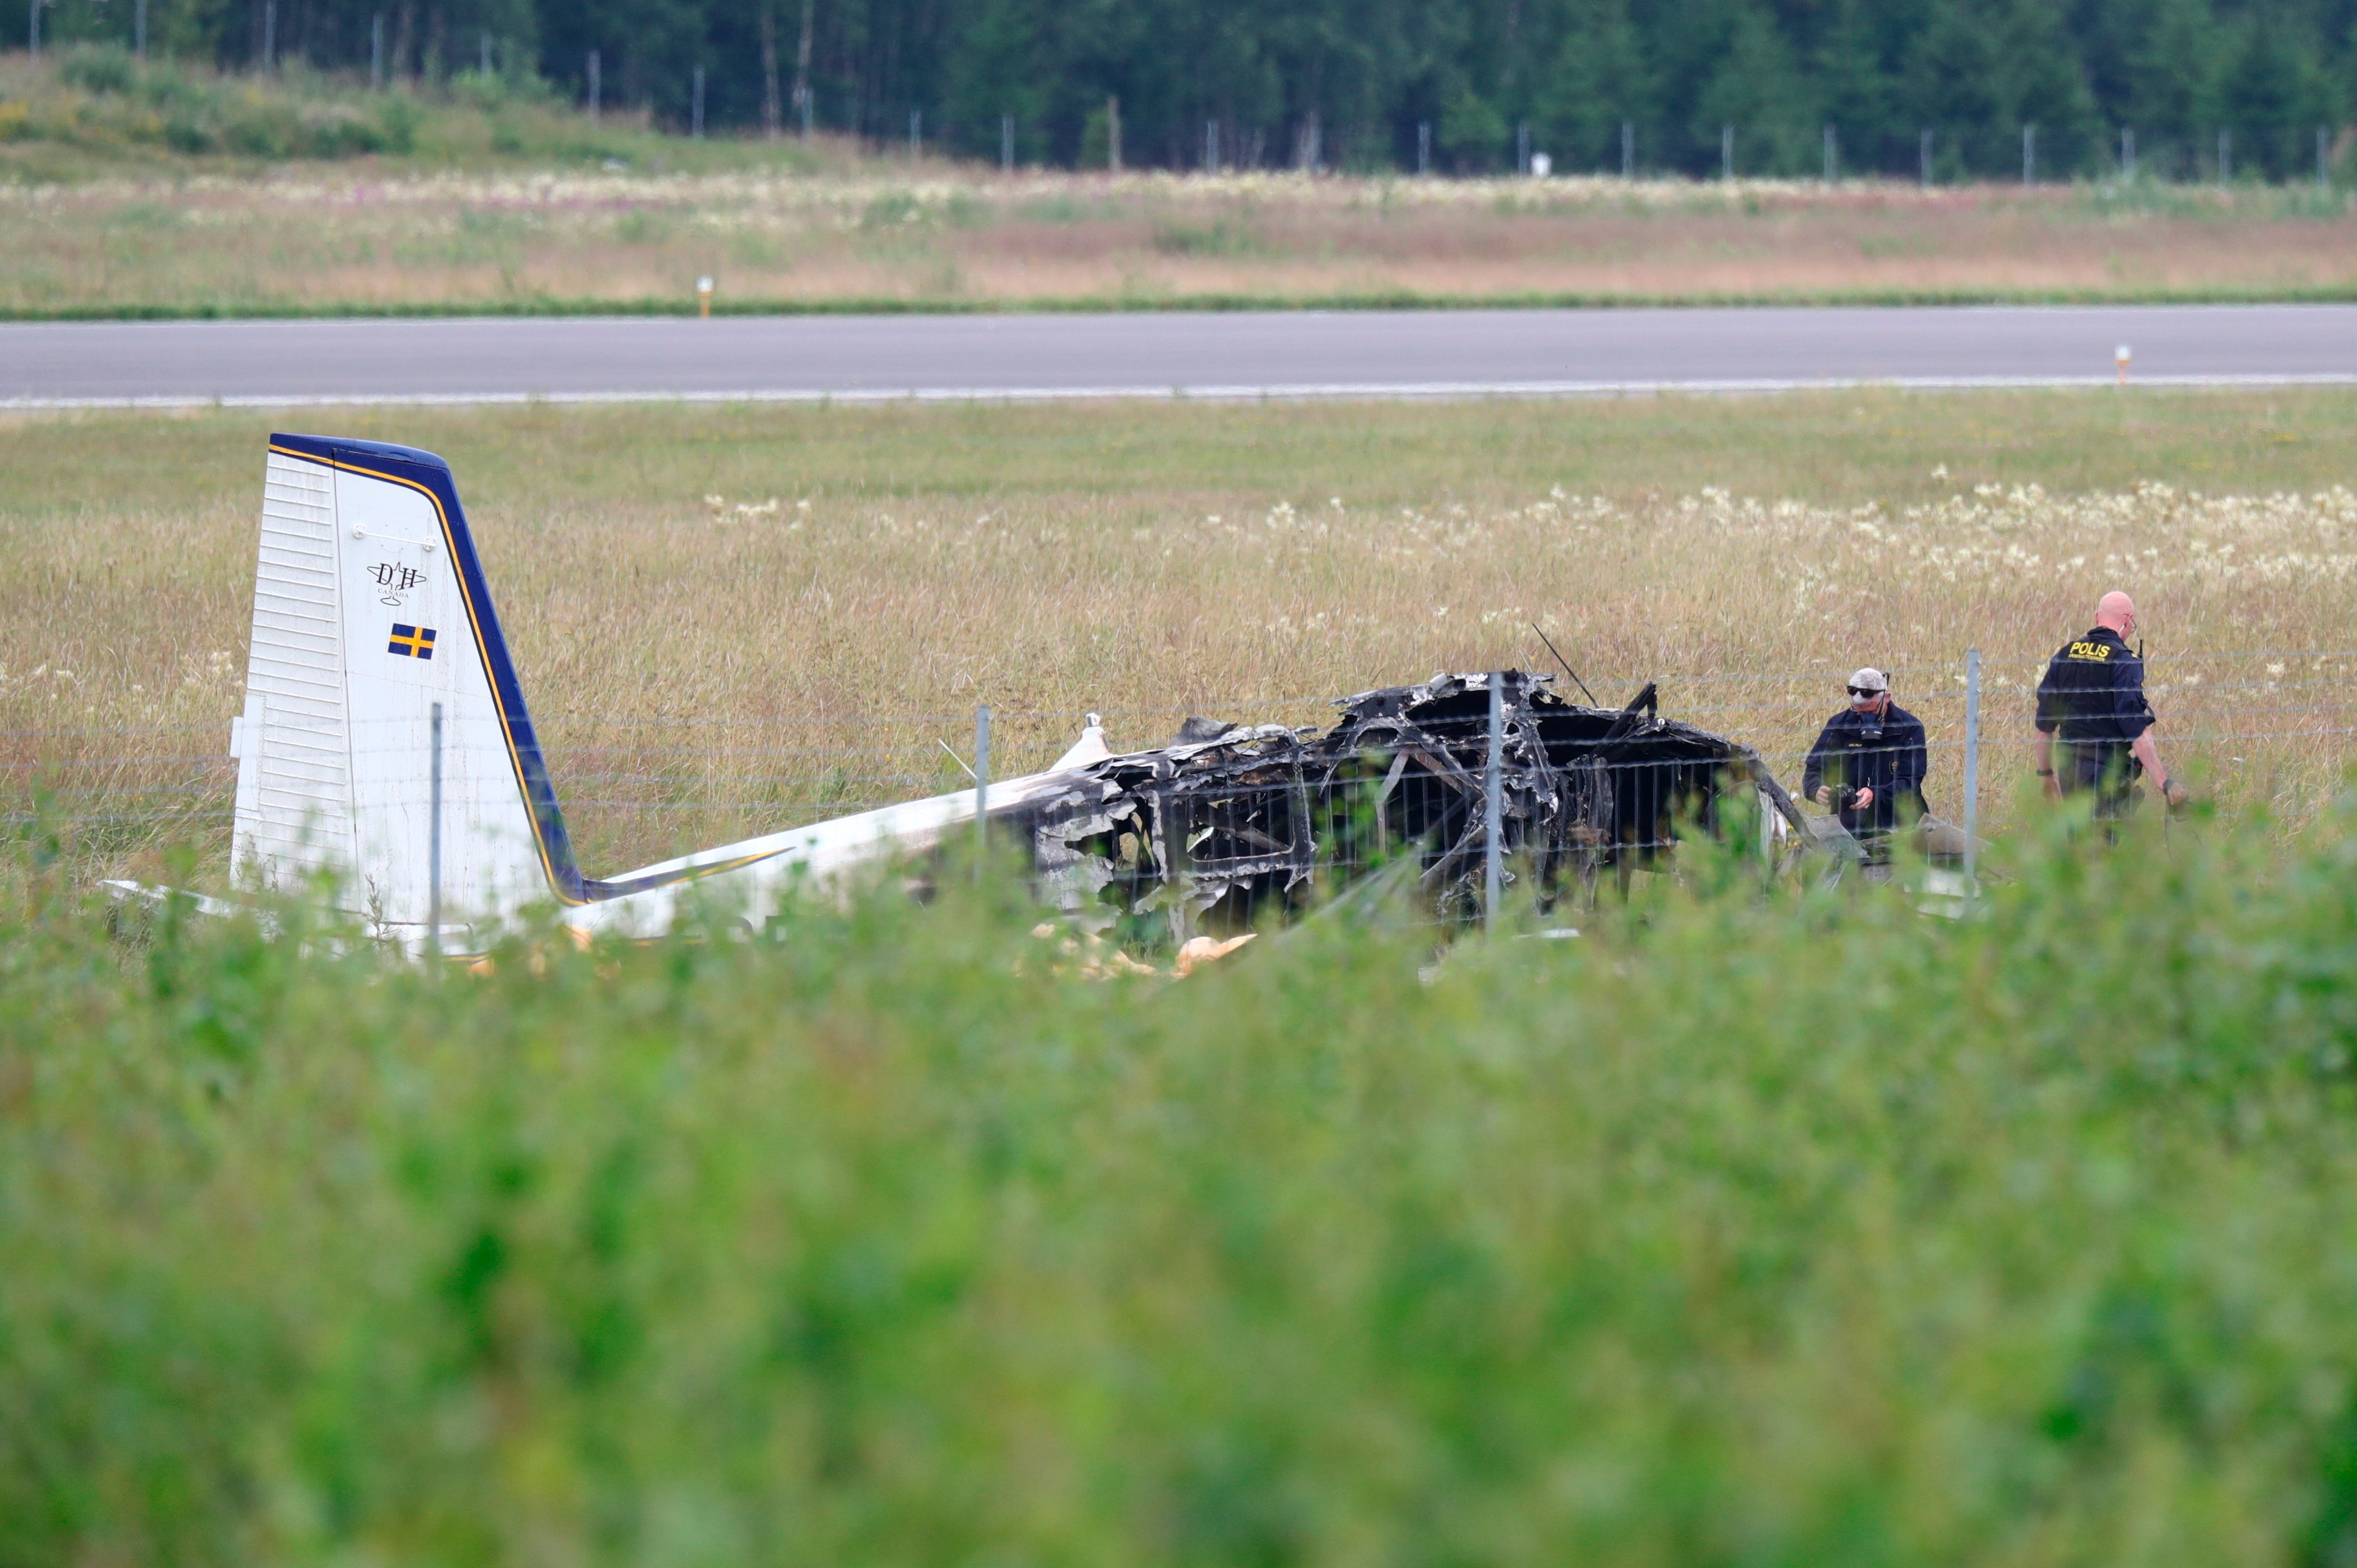 Sweden skydiving plane crash leaves 9 dead